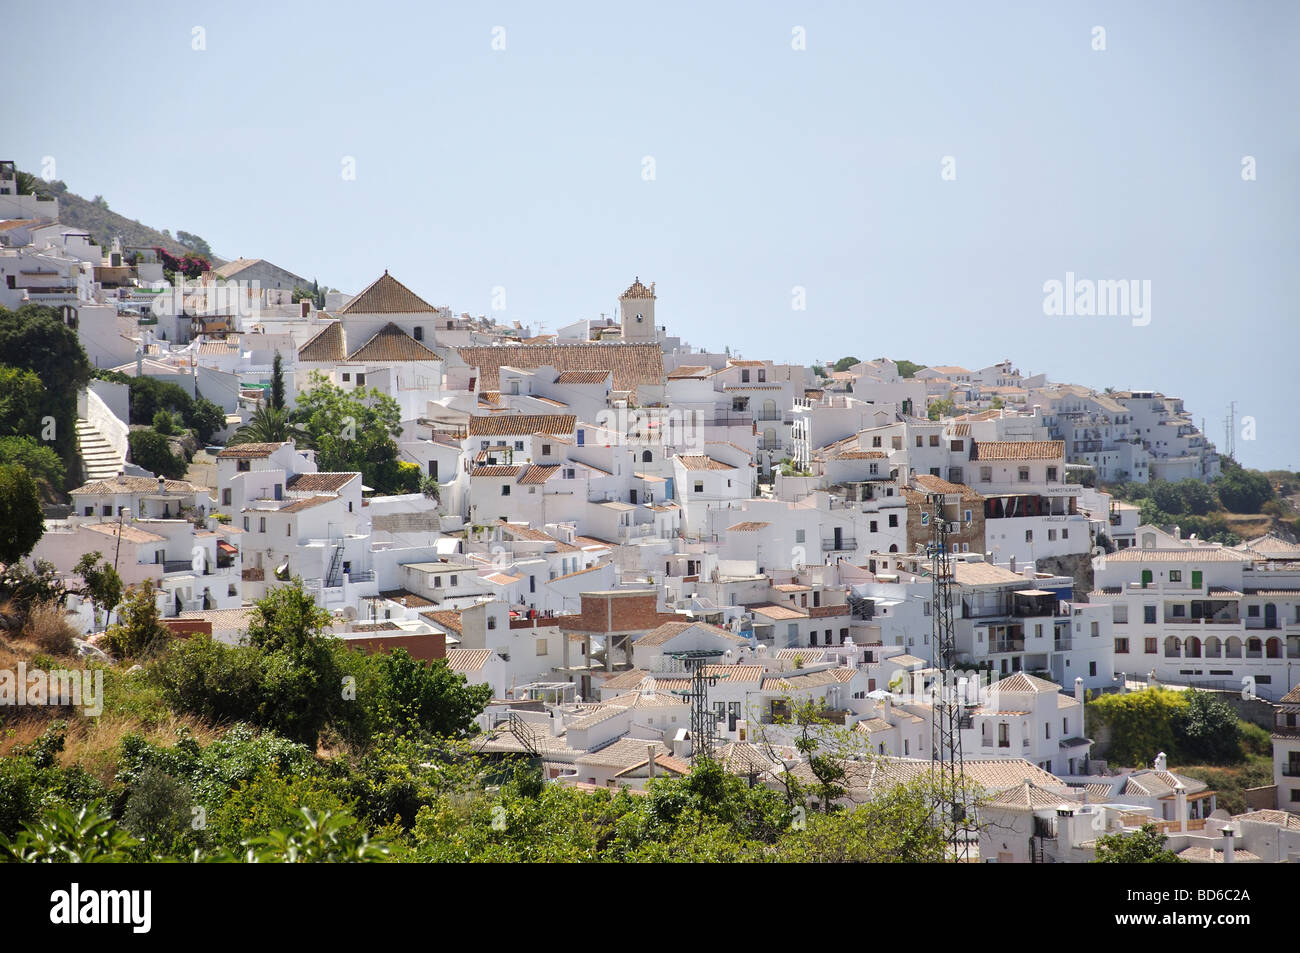 Blick auf schönen andalusischen Dorf von Frigiliana, Costa Del Sol, Provinz Malaga, Andalusien, Spanien Stockfoto